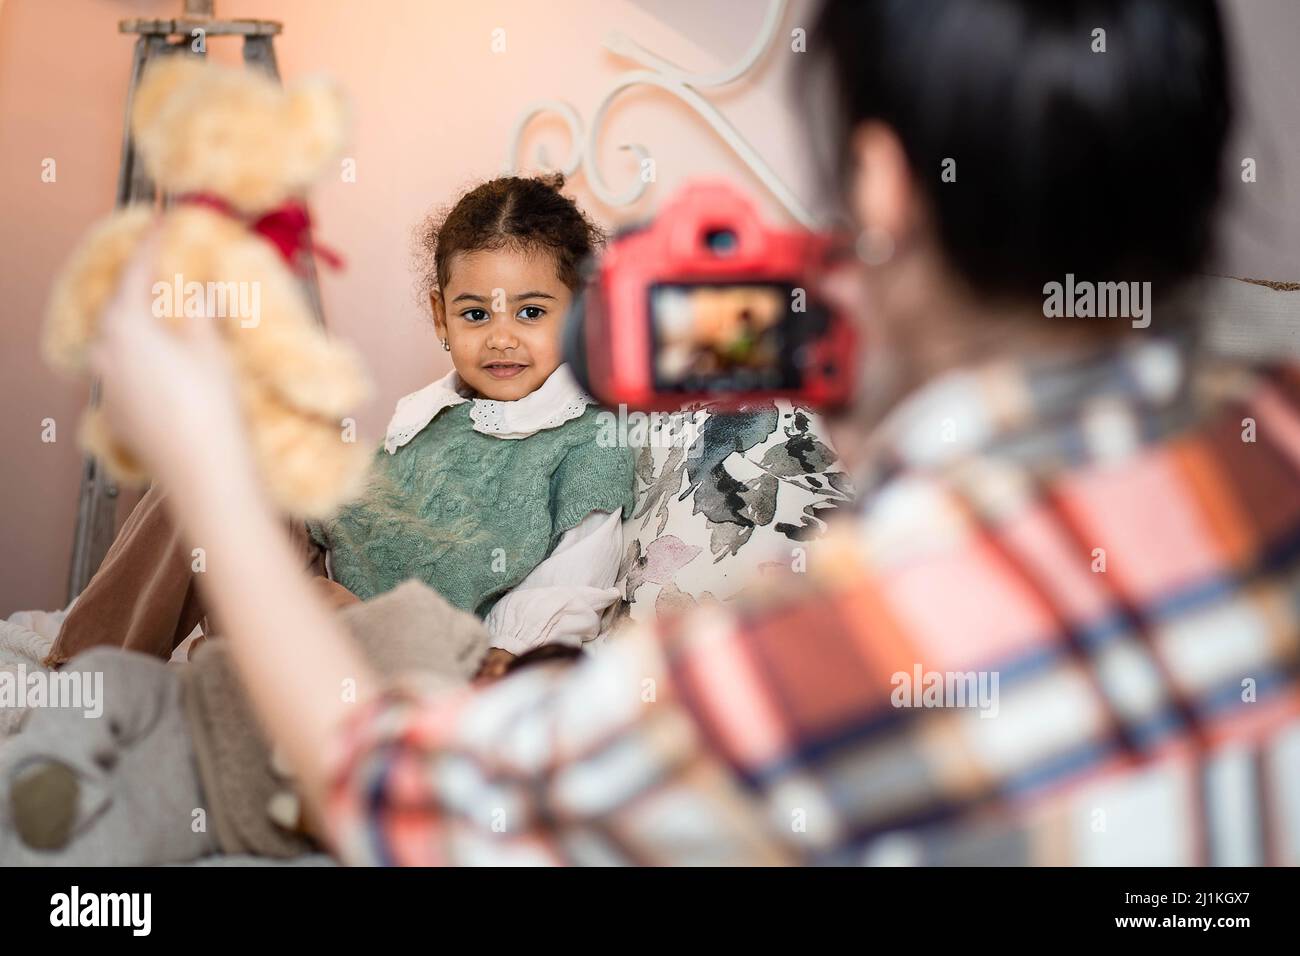 Fotografin fotografiert ein kleines multiethnisches Mädchen in einem Fotoshooting Stockfoto